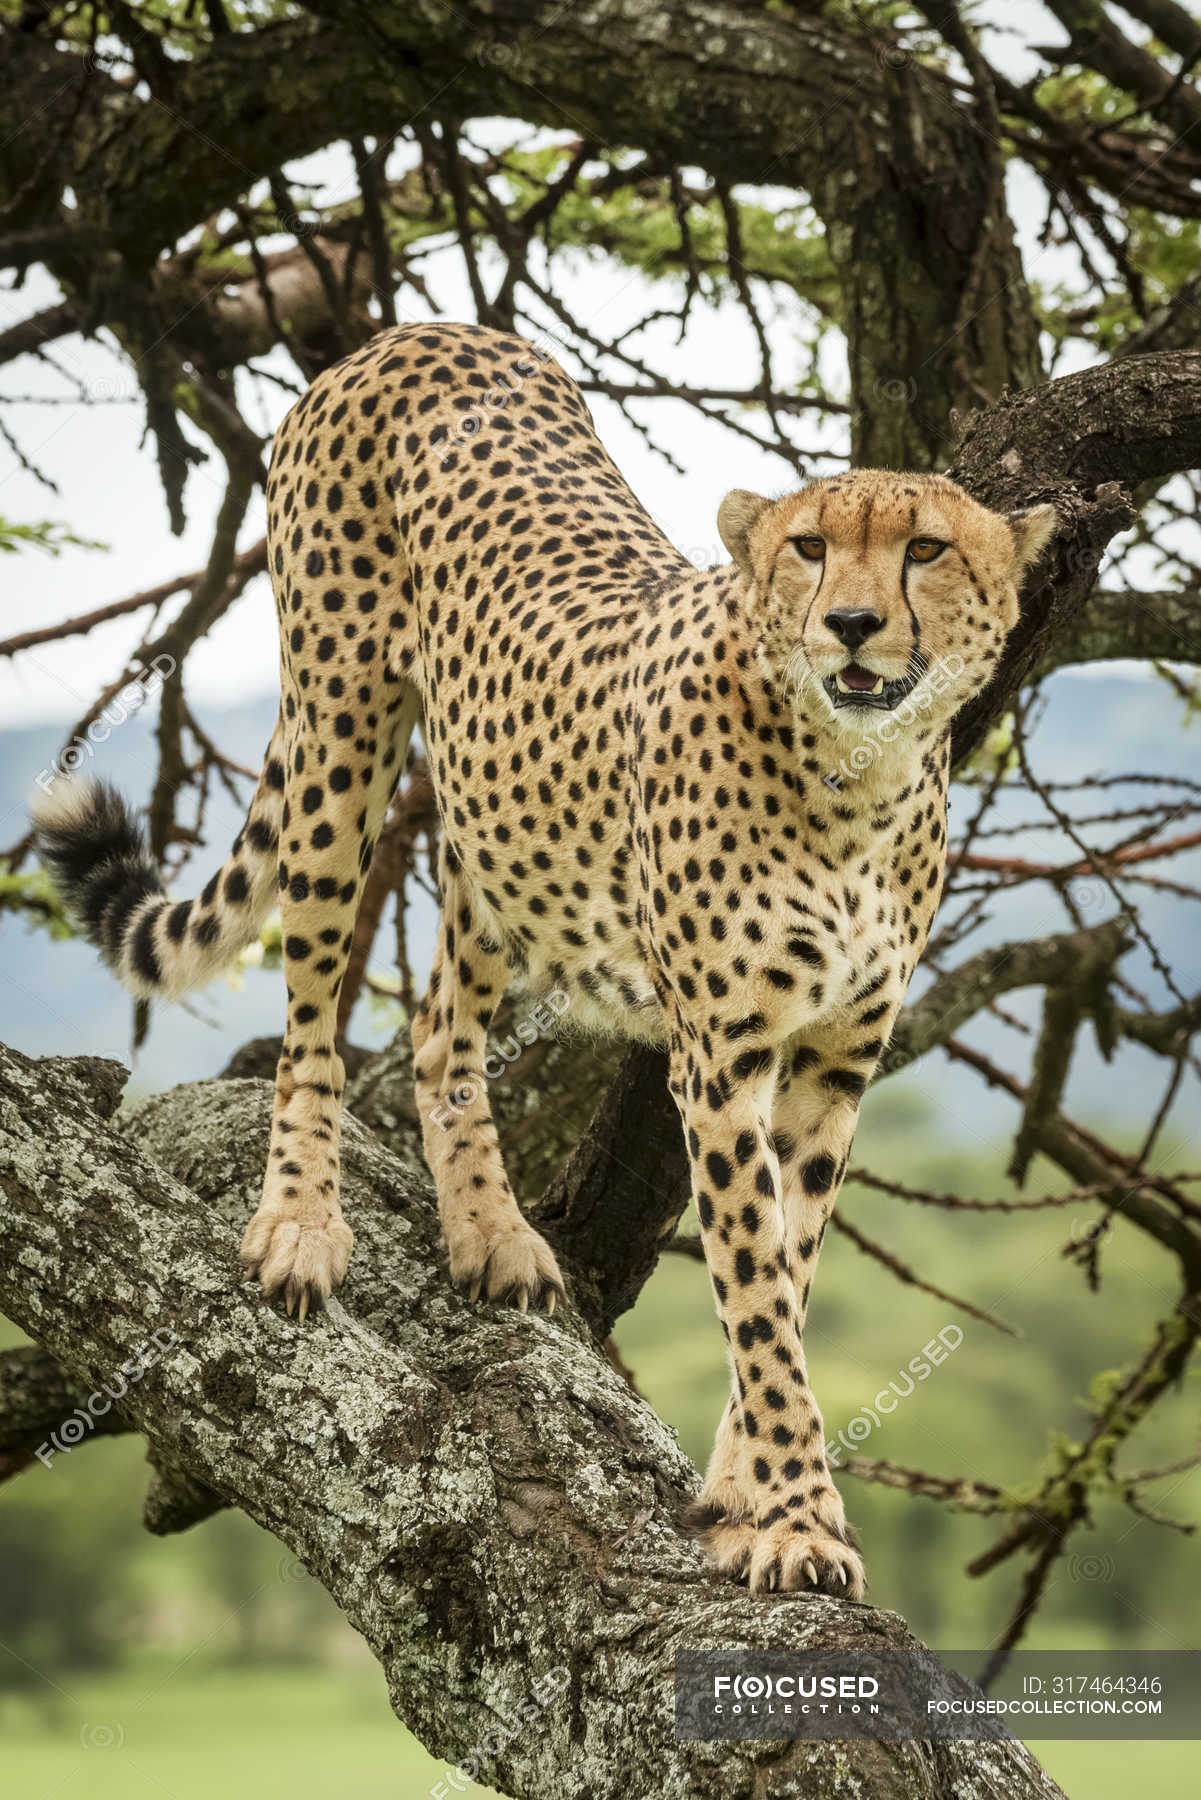 Cheetah share price